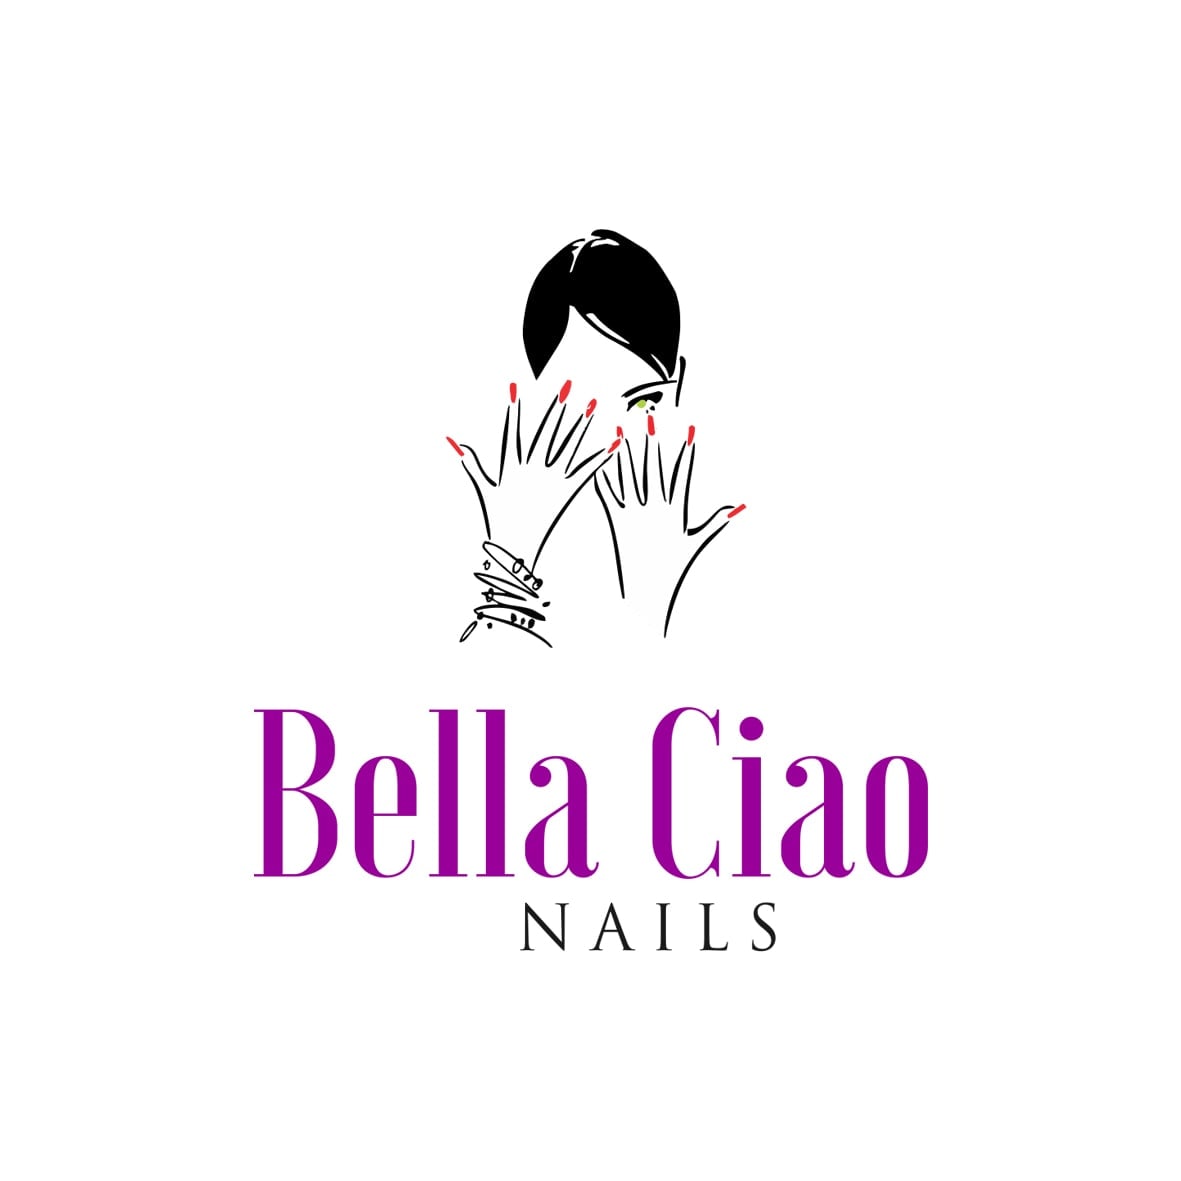 Bella Ciao Nails